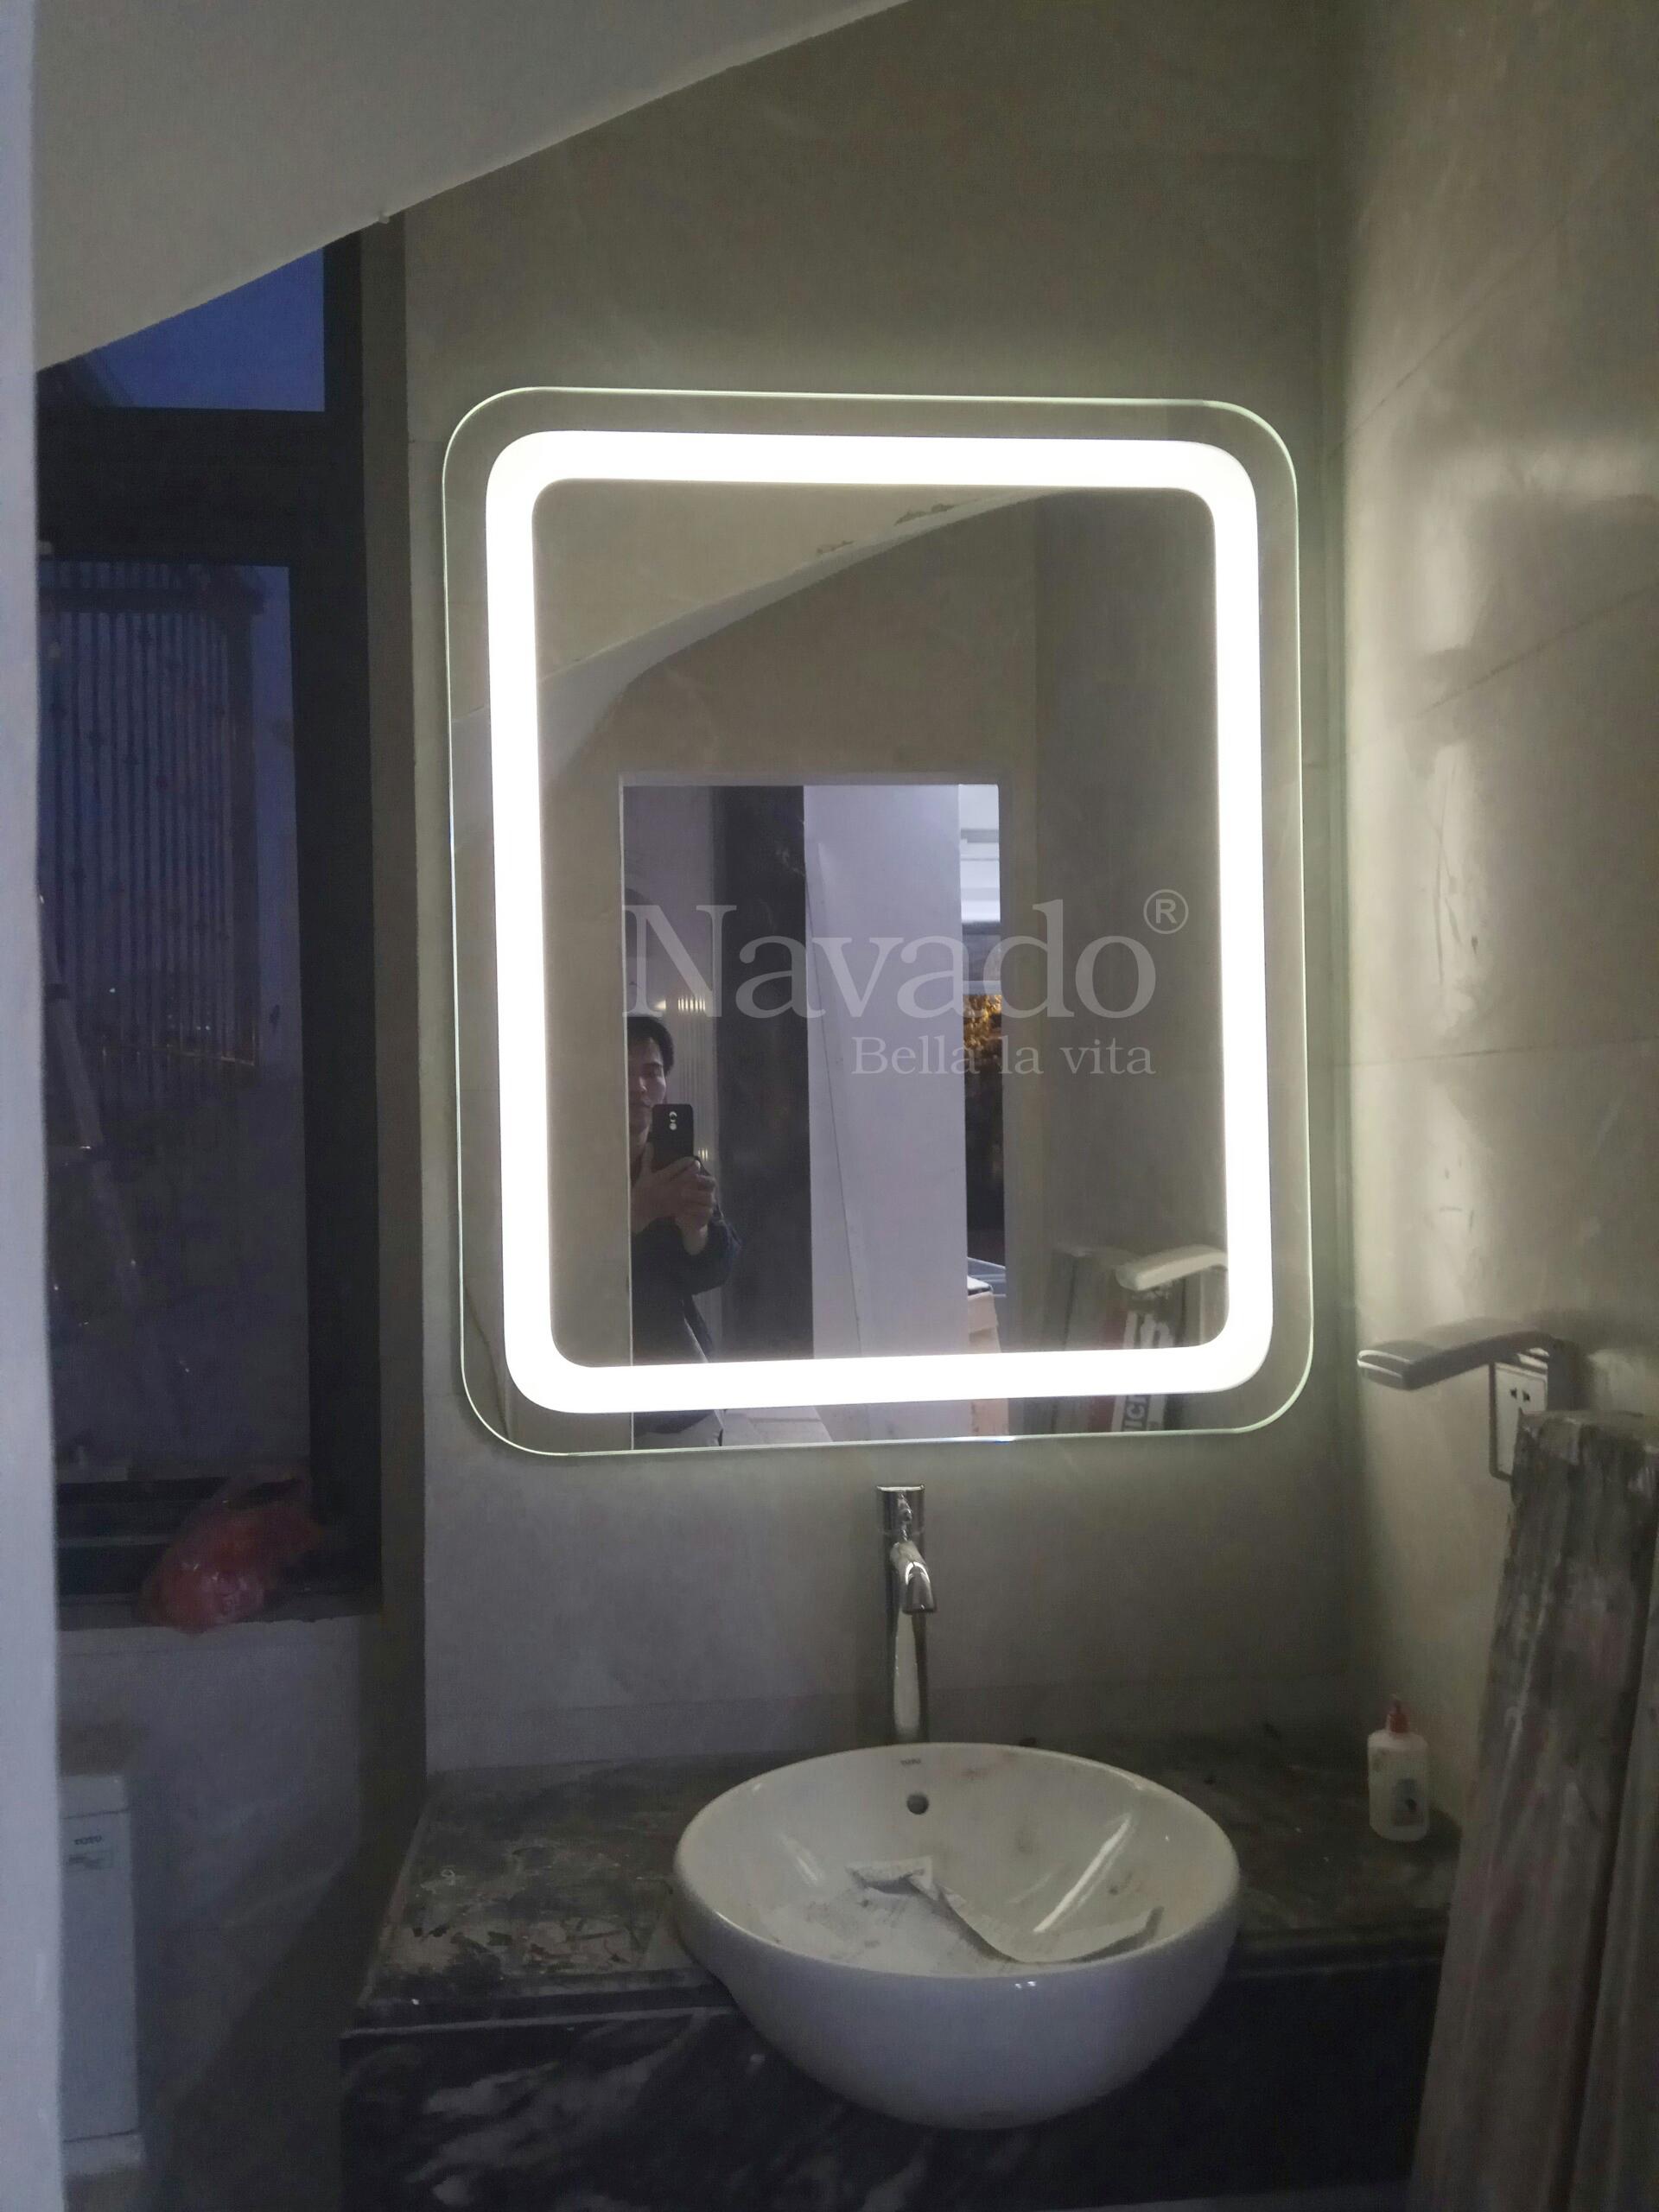 Tận hưởng một không gian tắm đẳng cấp và hiện đại hơn bao giờ hết với gương đèn LED hắt phòng tắm cao cấp. Thiết kế độc đáo và hiệu suất ánh sáng tuyệt vời đem lại giải pháp tối ưu cho việc trang điểm, làm đẹp hay các hoạt động mua sắm.